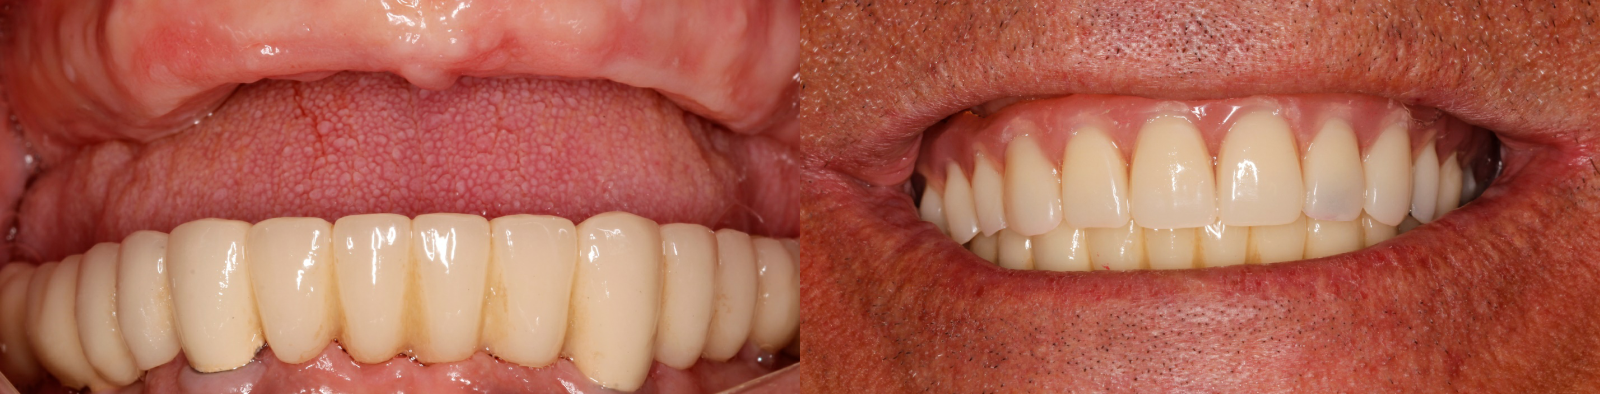 Восстановление зубов в верхней челюсти по методике «Все-на-6»